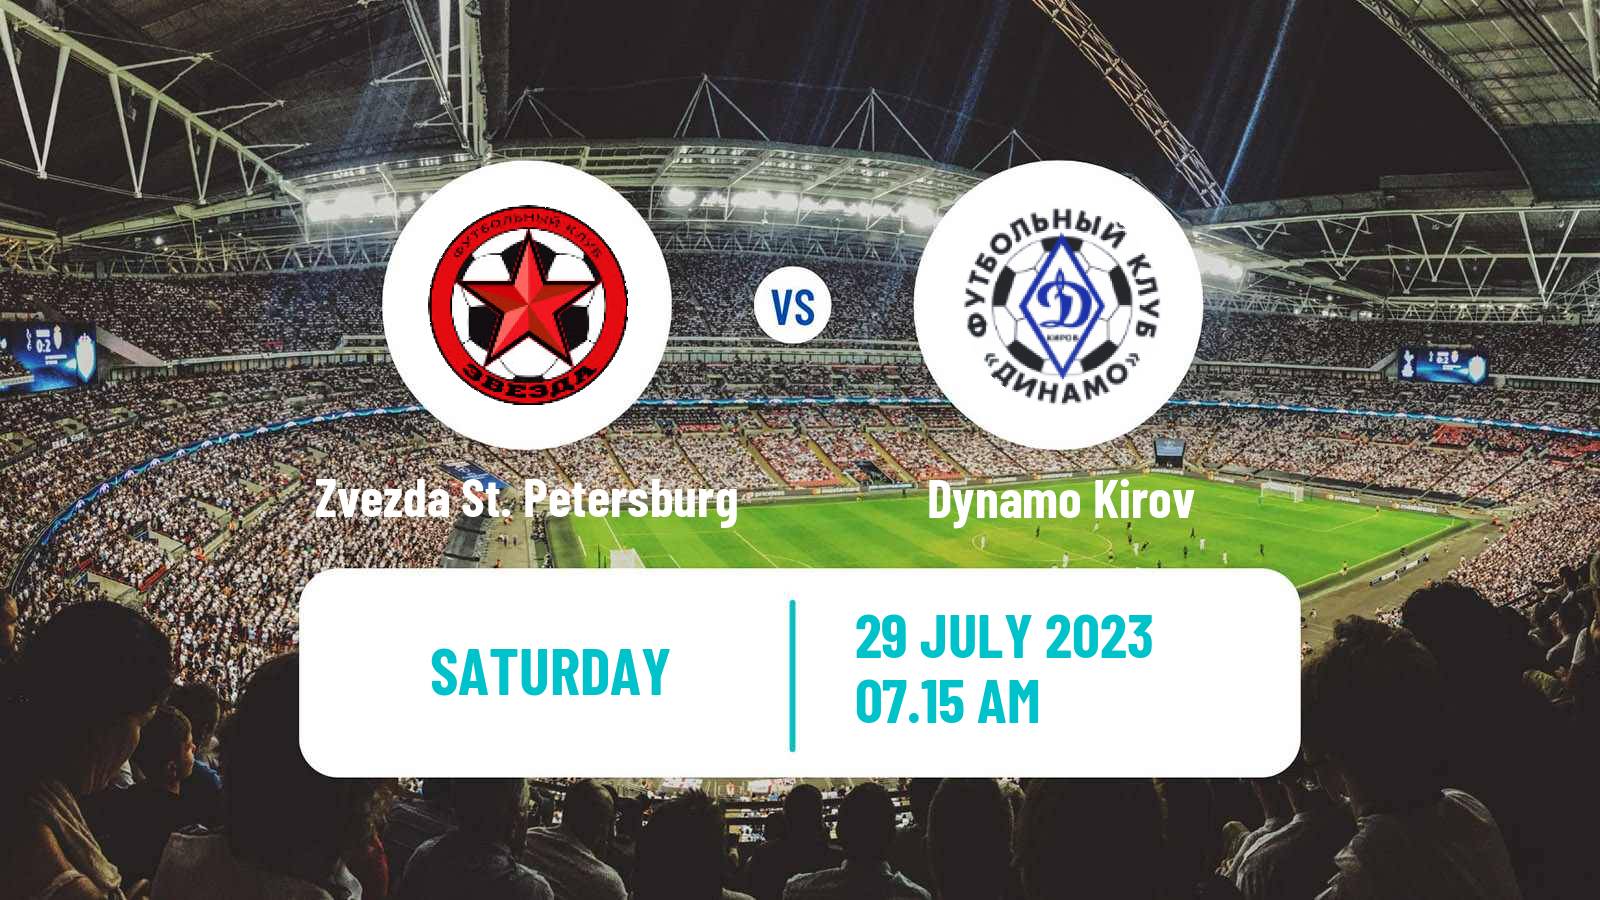 Soccer FNL 2 Division B Group 2 Zvezda St. Petersburg - Dynamo Kirov